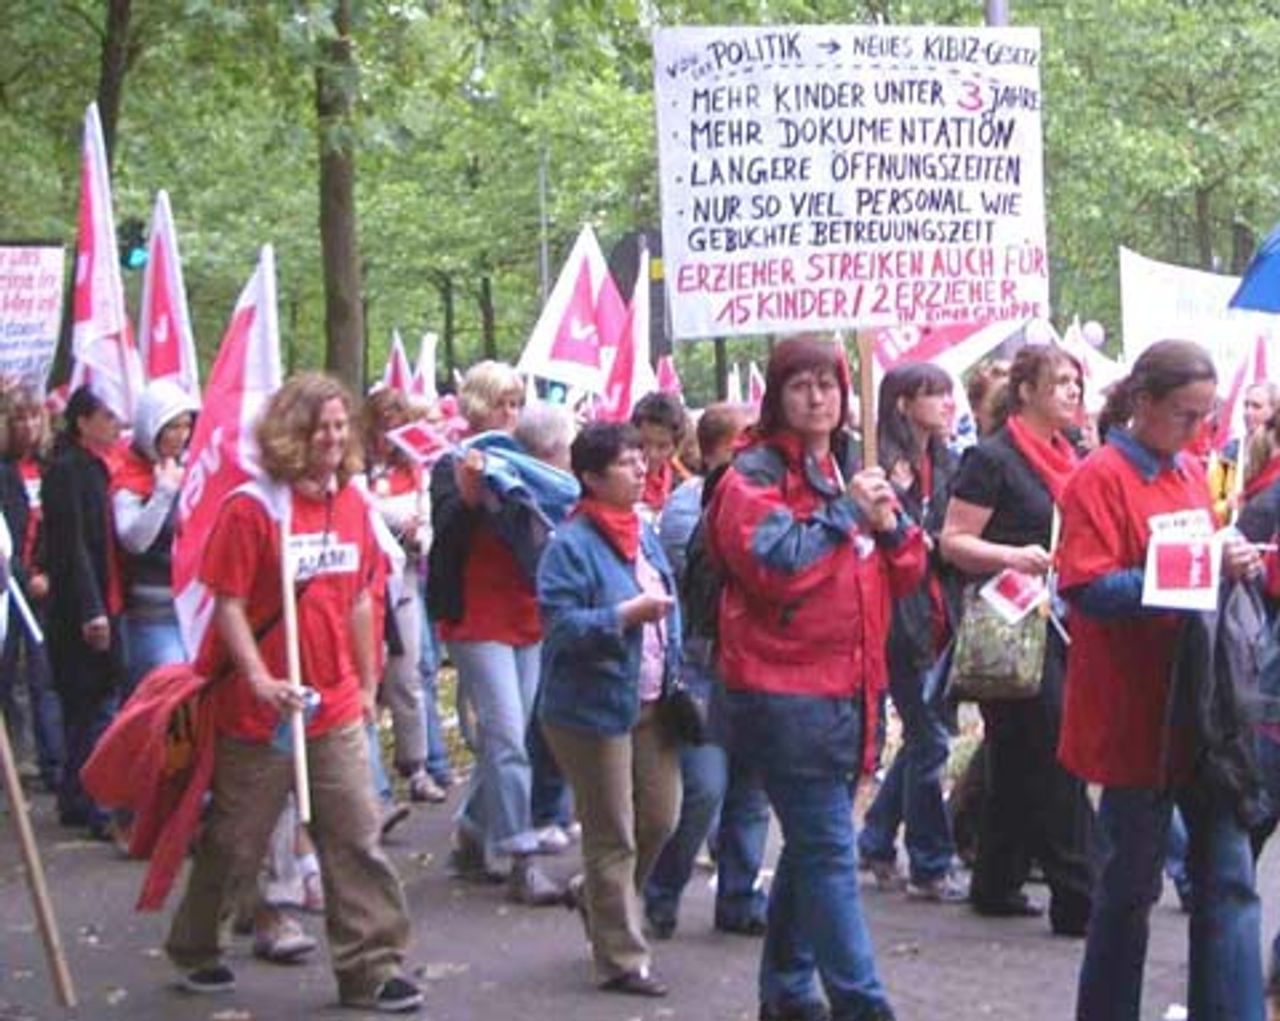 Auf der Demonstration in Köln